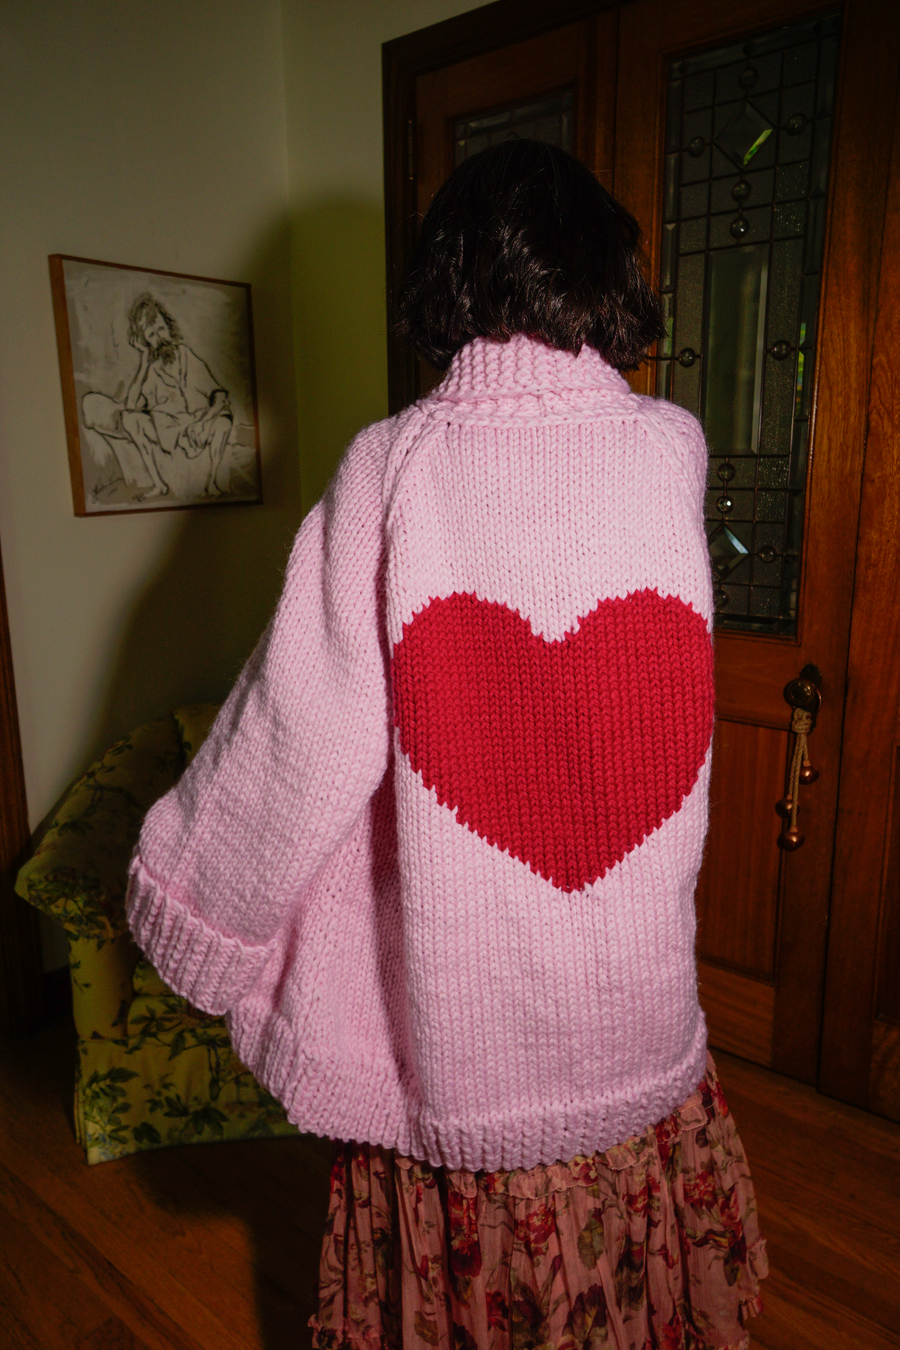 Heart Jacket